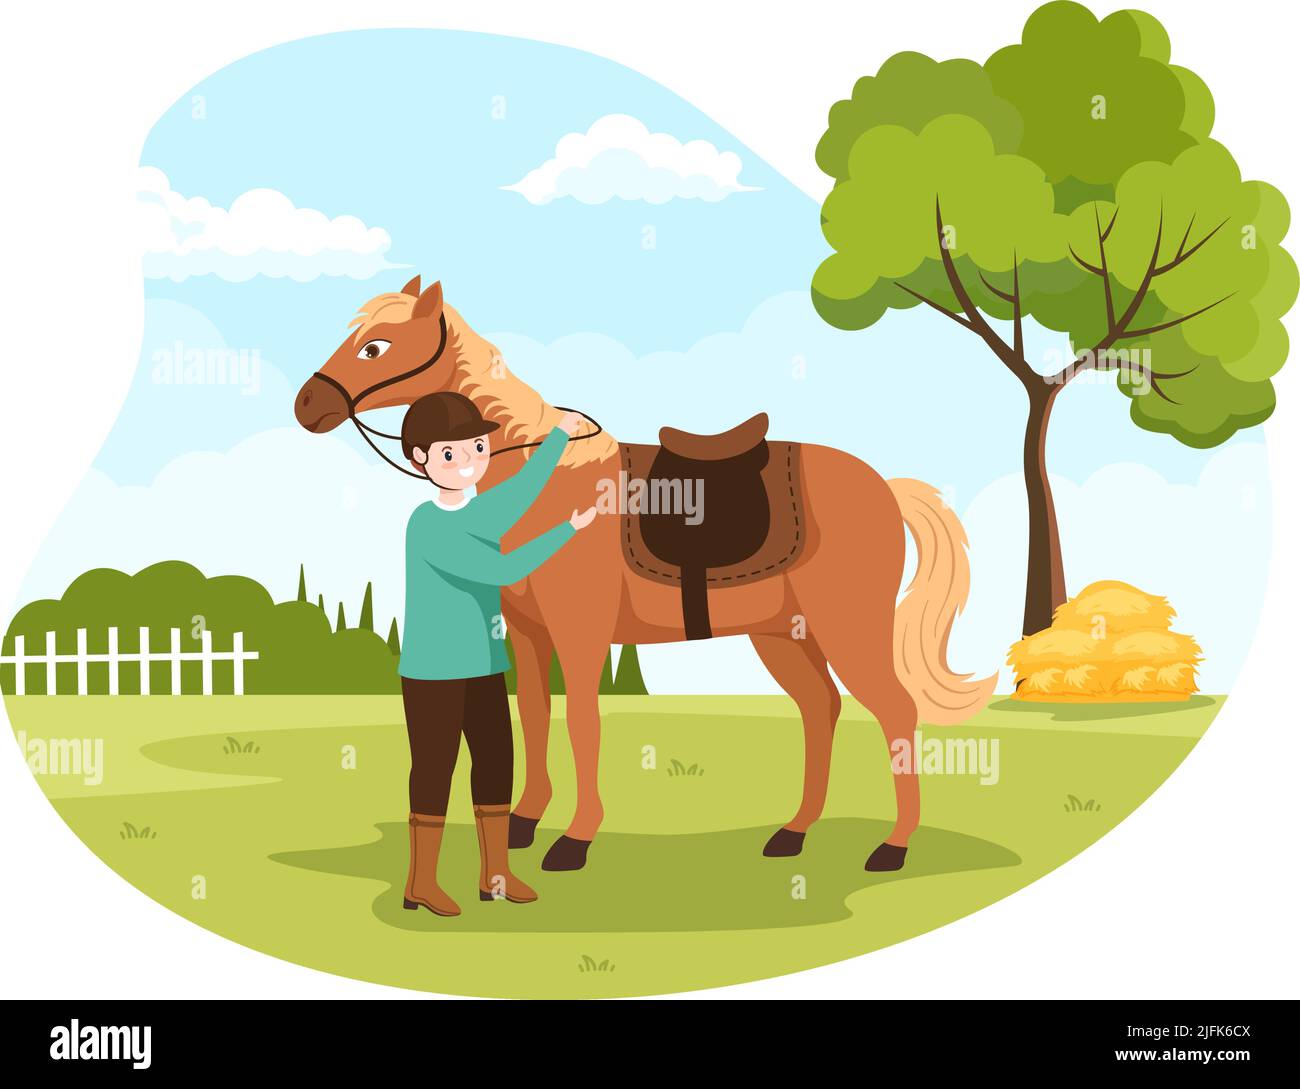 Dessin de cratère d'équitation Illustration avec les gens mignon personnage pratiquant l'équitation ou le sport d'équitation dans le champ vert Illustration de Vecteur